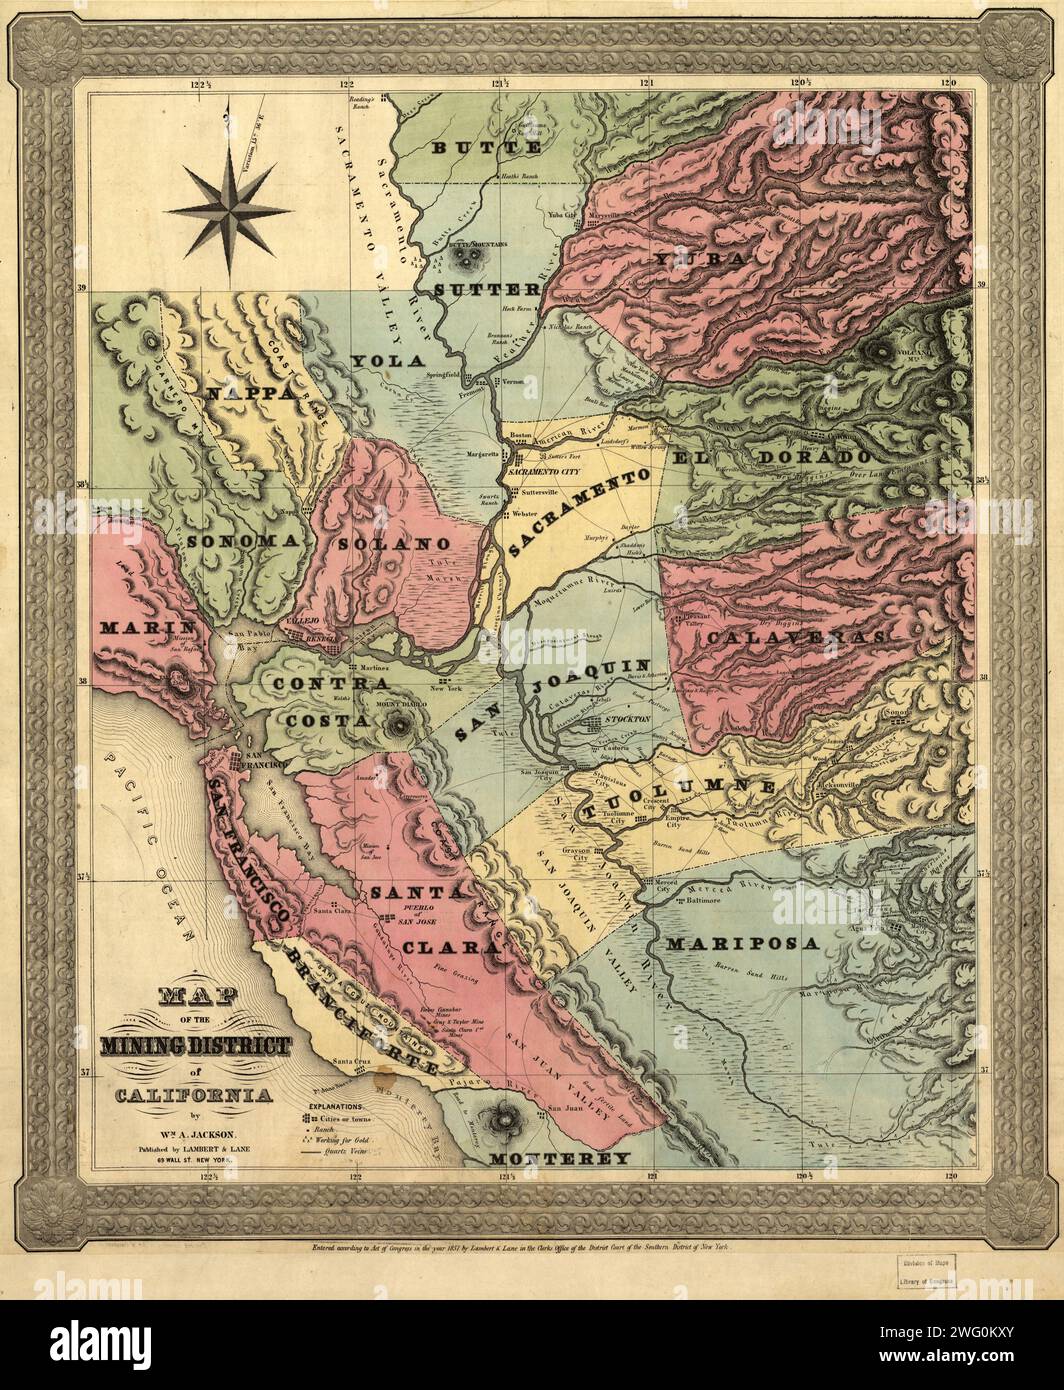 Karte des Bergbaubezirks von Kalifornien, 1851. Diese Karte, die in zwei Teilen in den ersten Jahren nach dem kalifornischen Goldrausch von 1849 erstellt wurde, zeigt die Regionen, in denen Gold im Territorium entdeckt wurde. Begleitend zur Karte war ein 16-seitiger Anhang, der weitere Informationen über die Lage und Bedeutung der Goldschläge gab. Die Entdeckung von Gold in Sutter’s Mill am American River im Januar 1848 zog Migranten aus der Ostküste der Vereinigten Staaten sowie aus Europa, Mittel- und Südamerika, Australien und Asien an. Der Vertrag von Guadalupe Hidalgo beendete das mexikanisch-amerikanische W Stockfoto